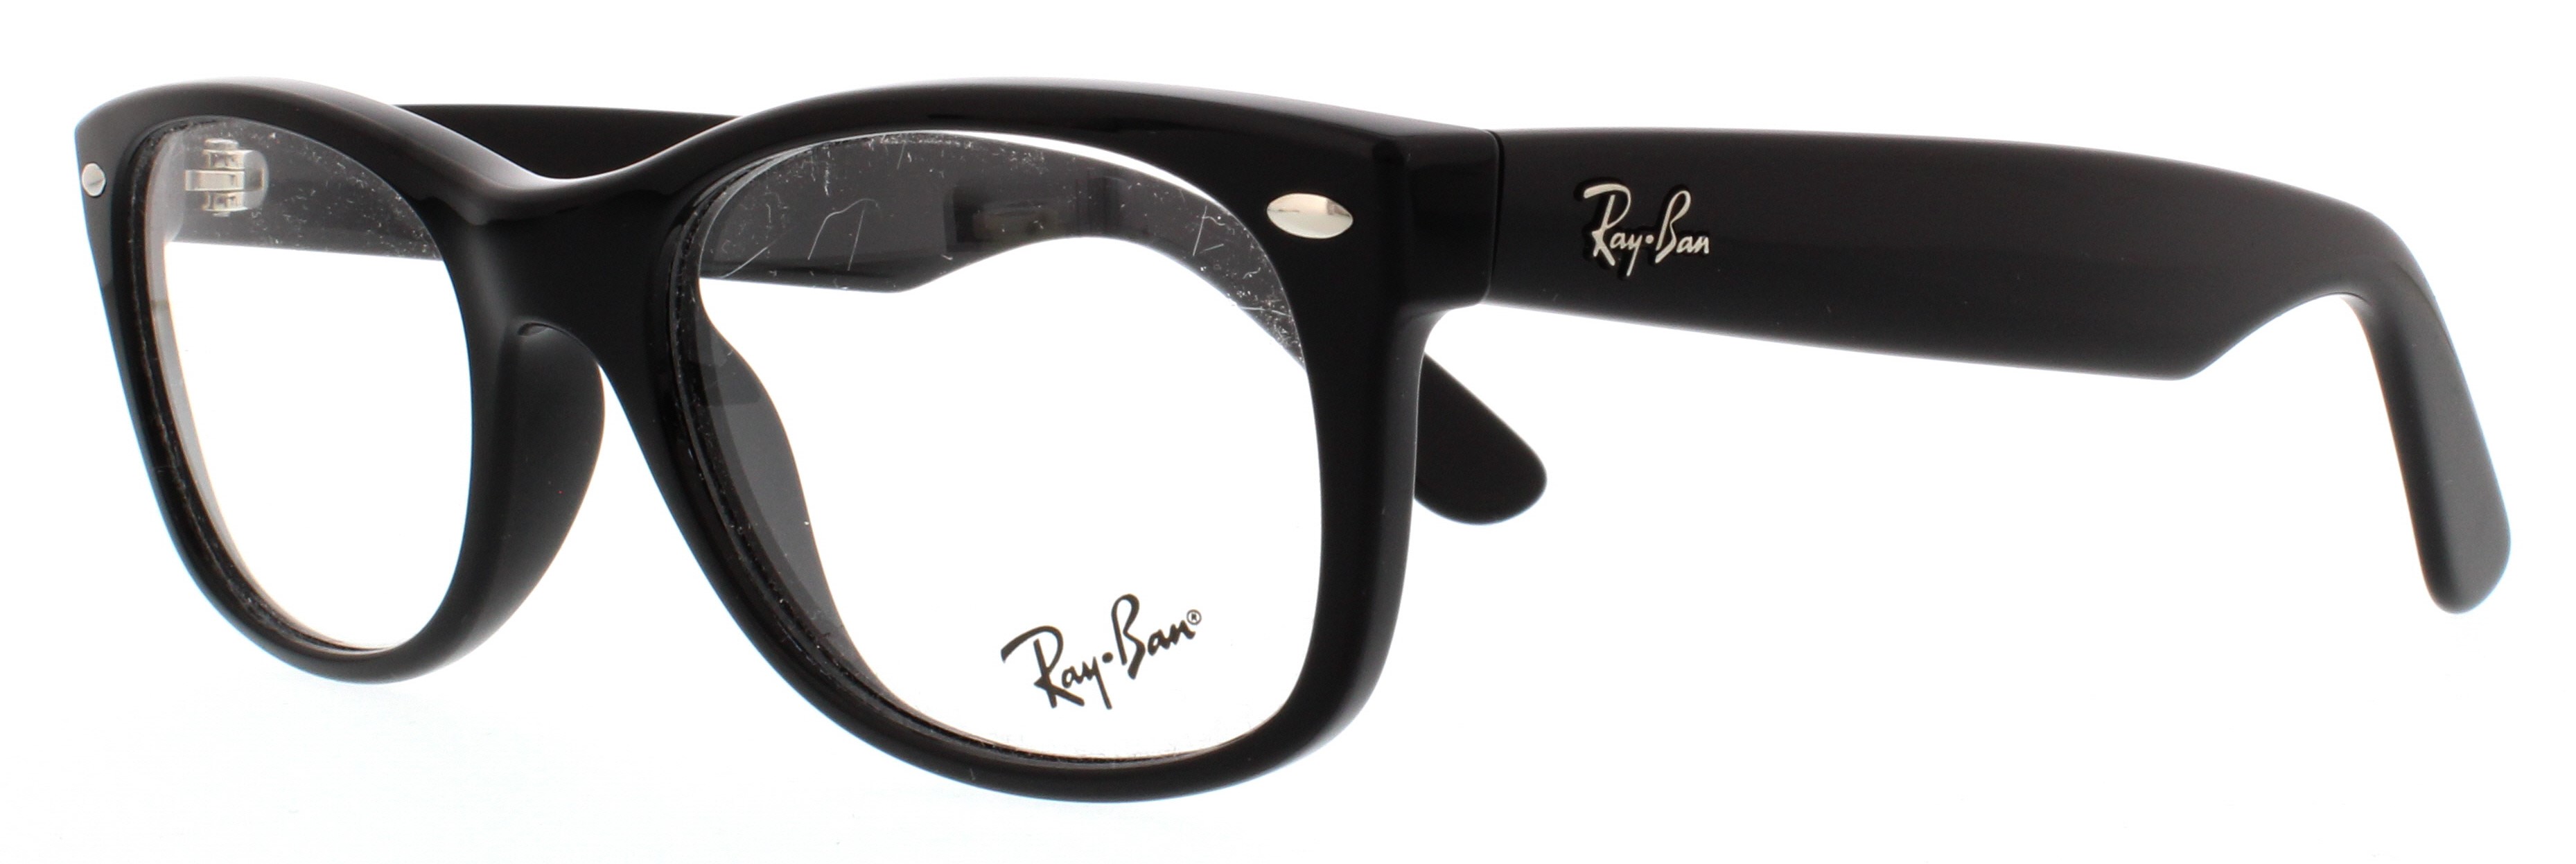 Designer Frames Outlet. Ray Ban Eyeglasses RX5184 New Wayfarer